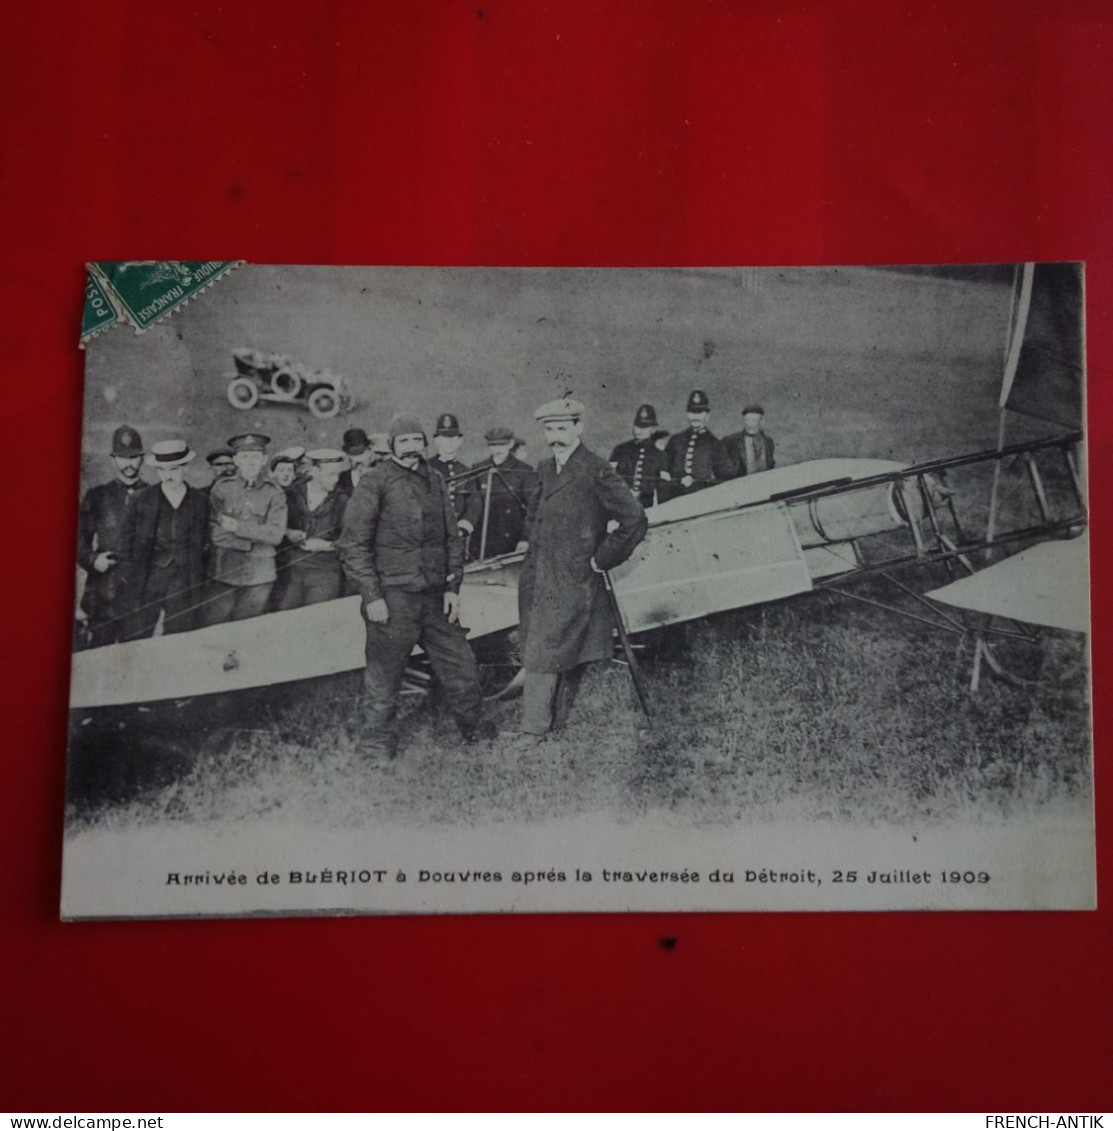 ARRIVEE DE BLERIOT A DOUVRES APRES LA TRAVERSEE DU DETROIT 1909 - Flieger